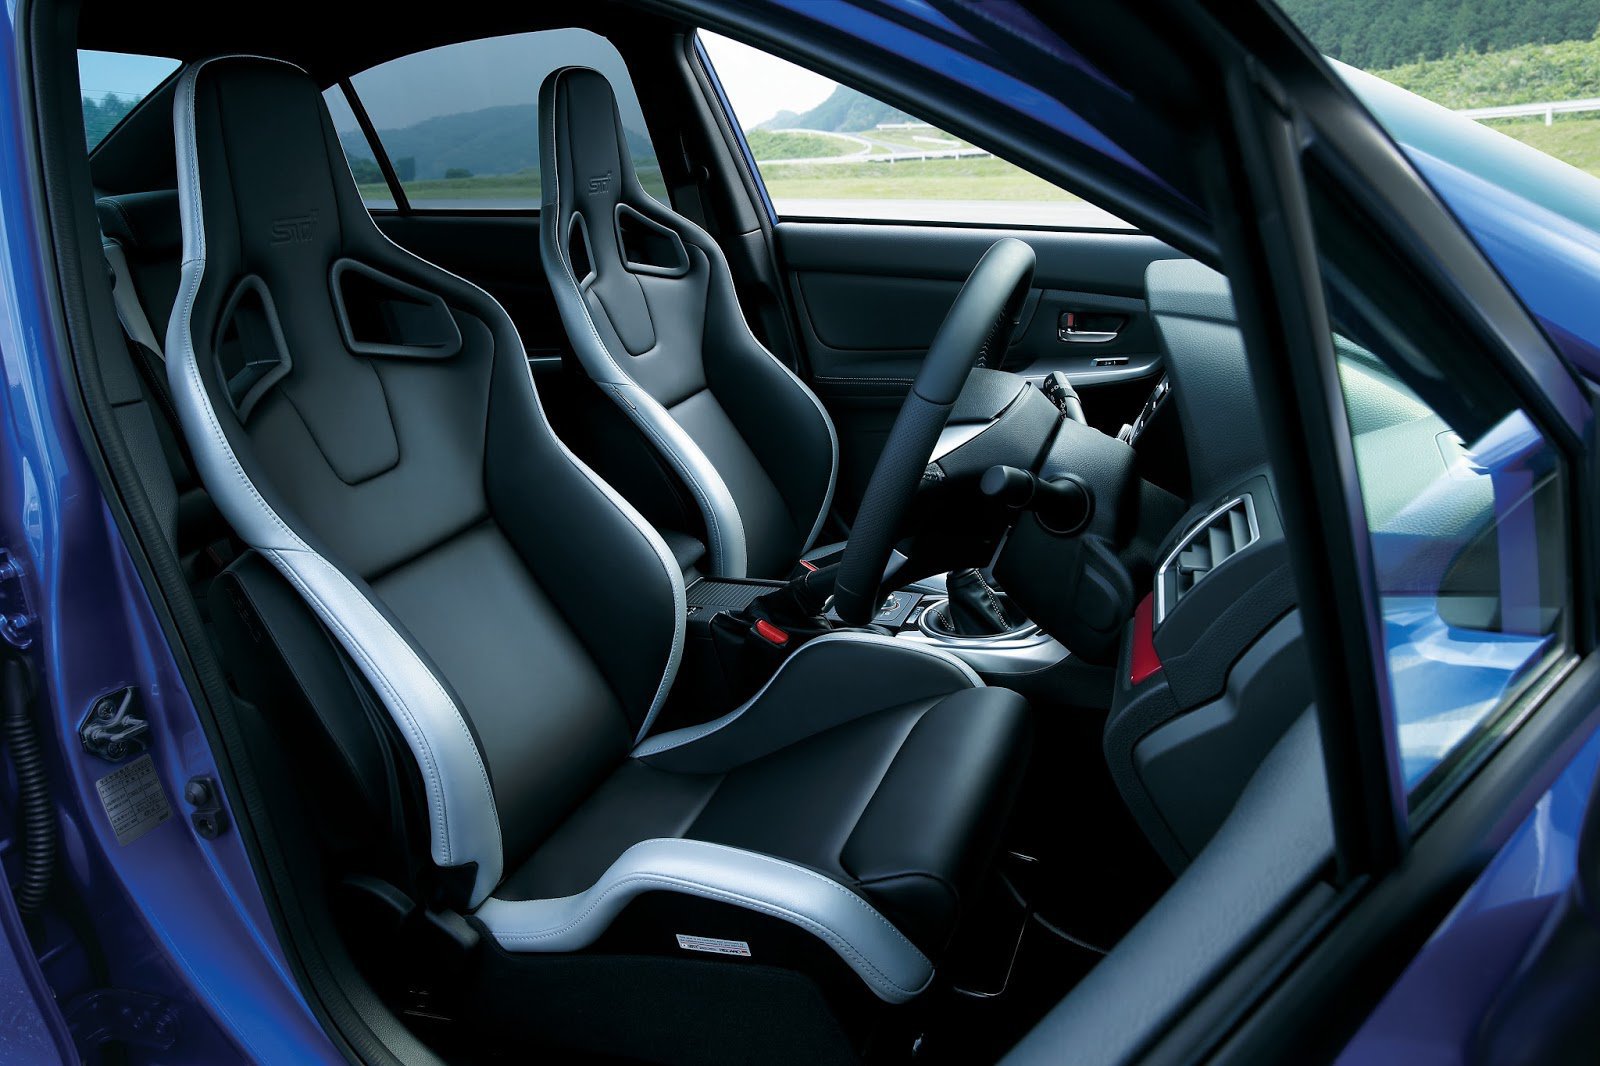 Anatomická sedadla Recaro, čalouněná kůží, Subaru WRX STi S207.